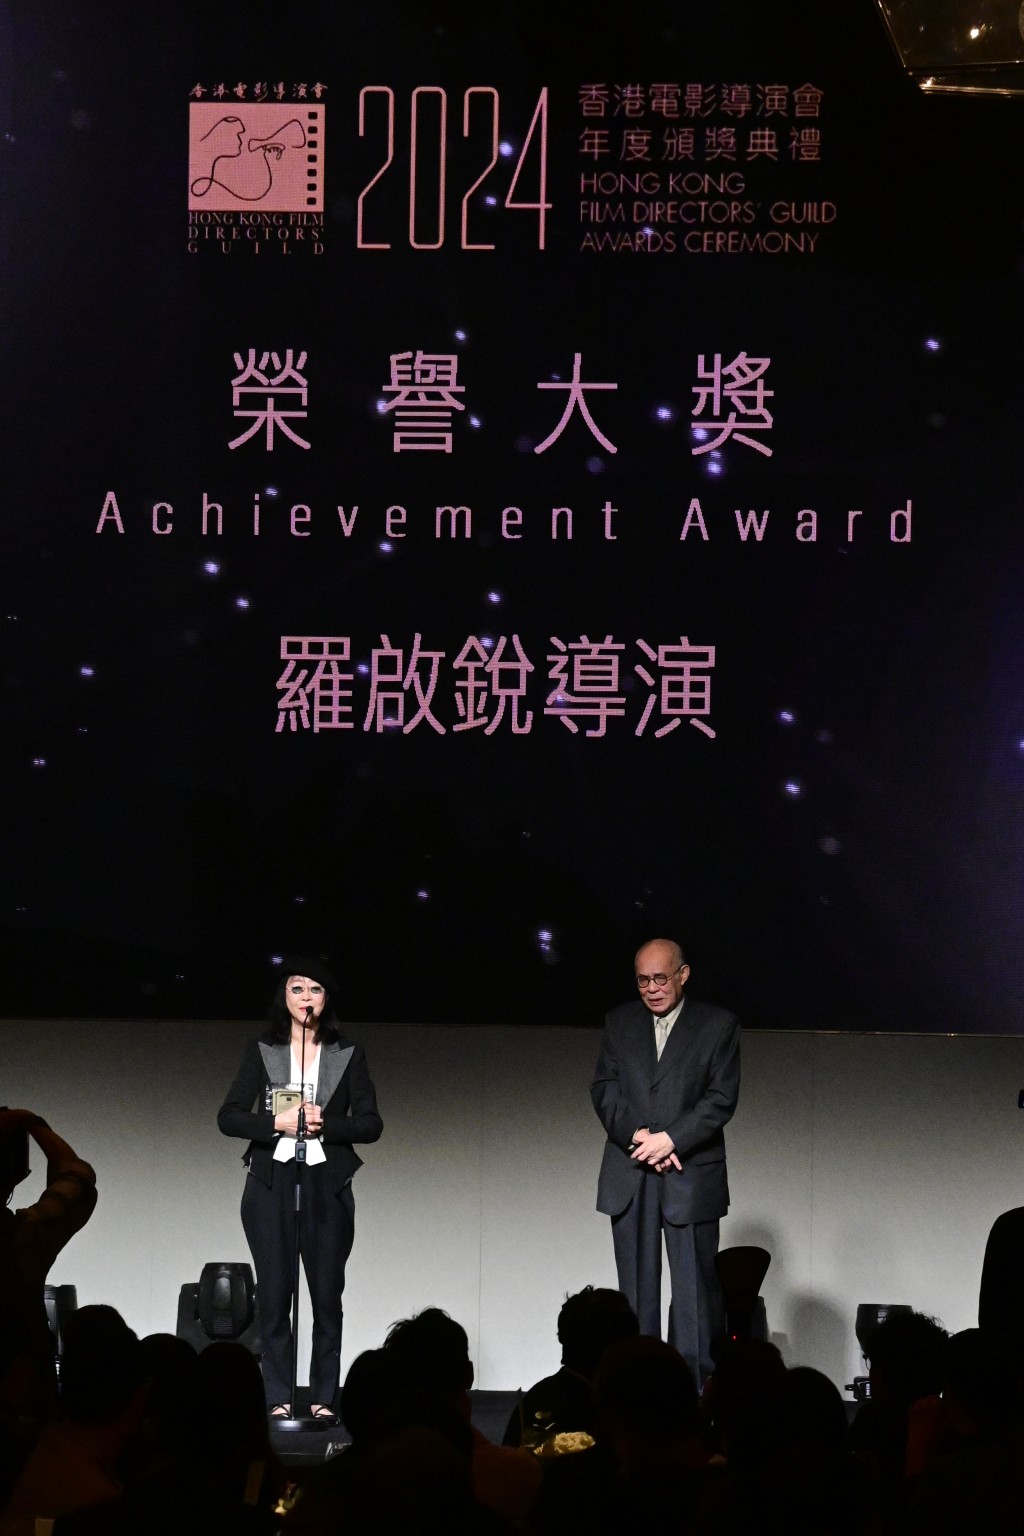 「荣誉大奖」由已故导演罗启锐夺得。